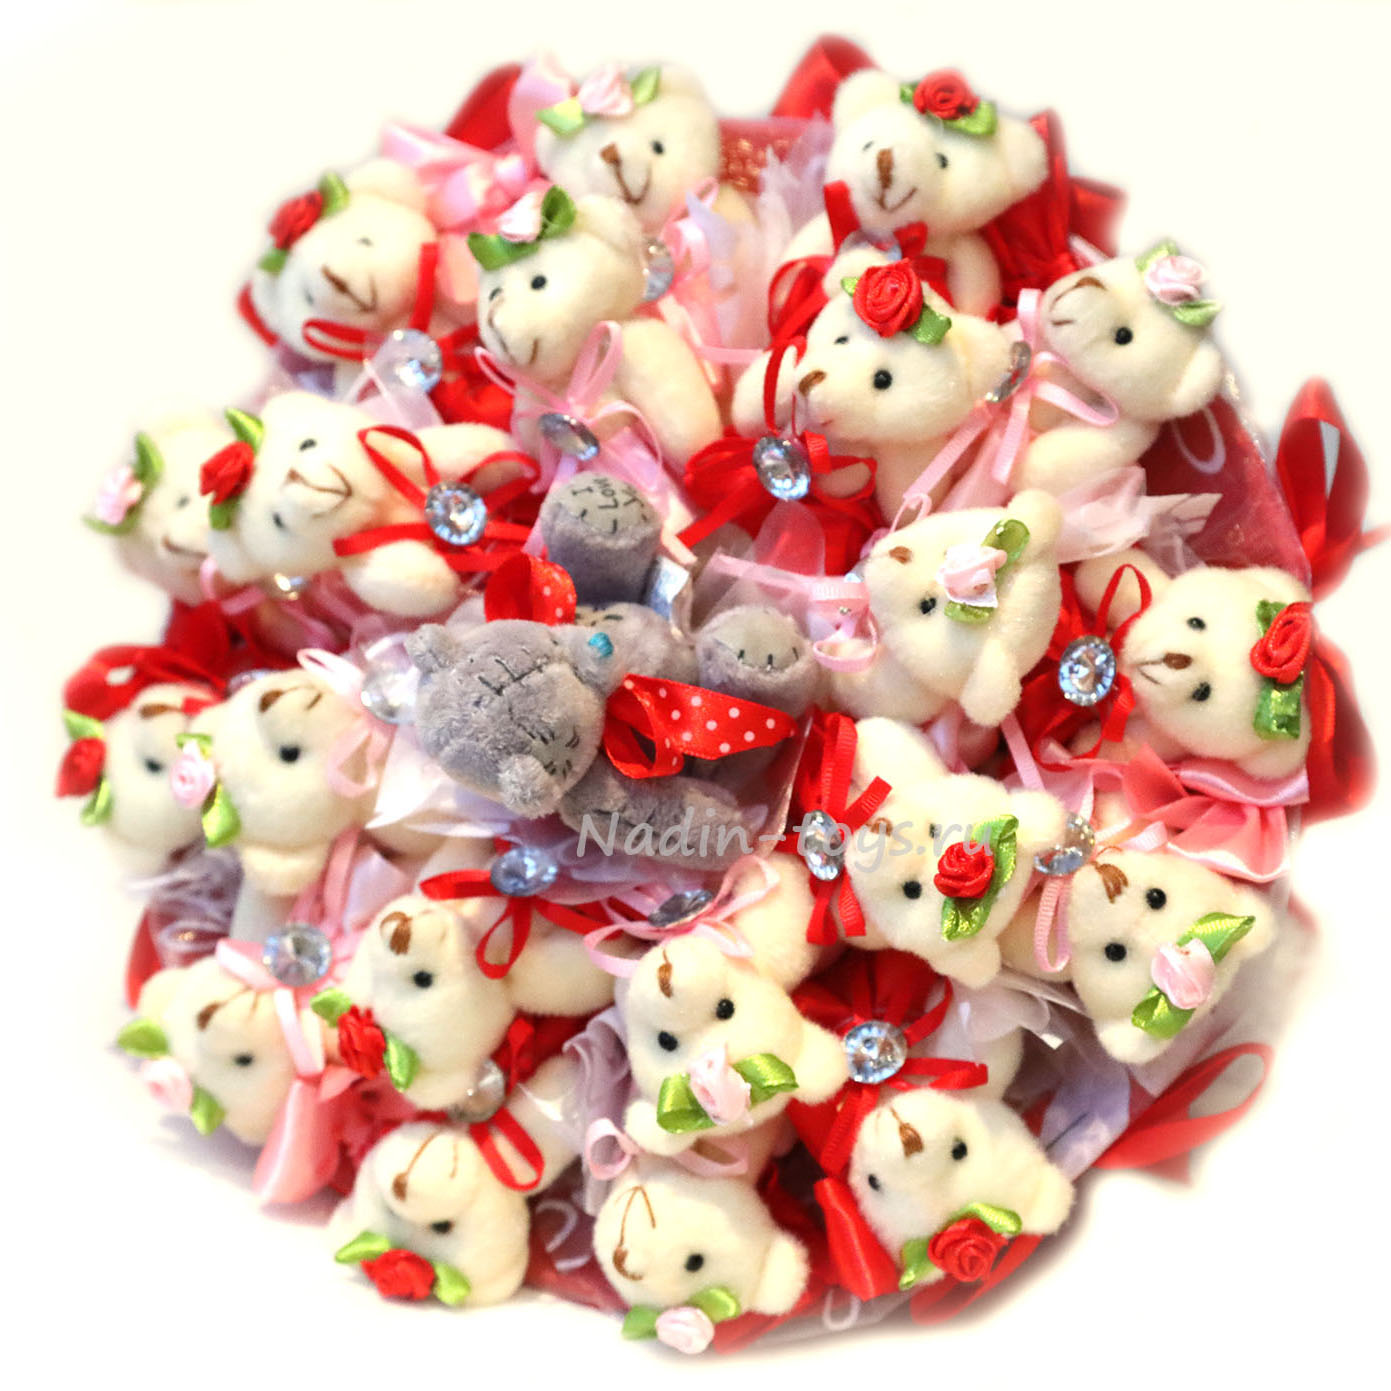 Букет из 21 мини-мишки и мишки Тедди в красно-розовых тонах